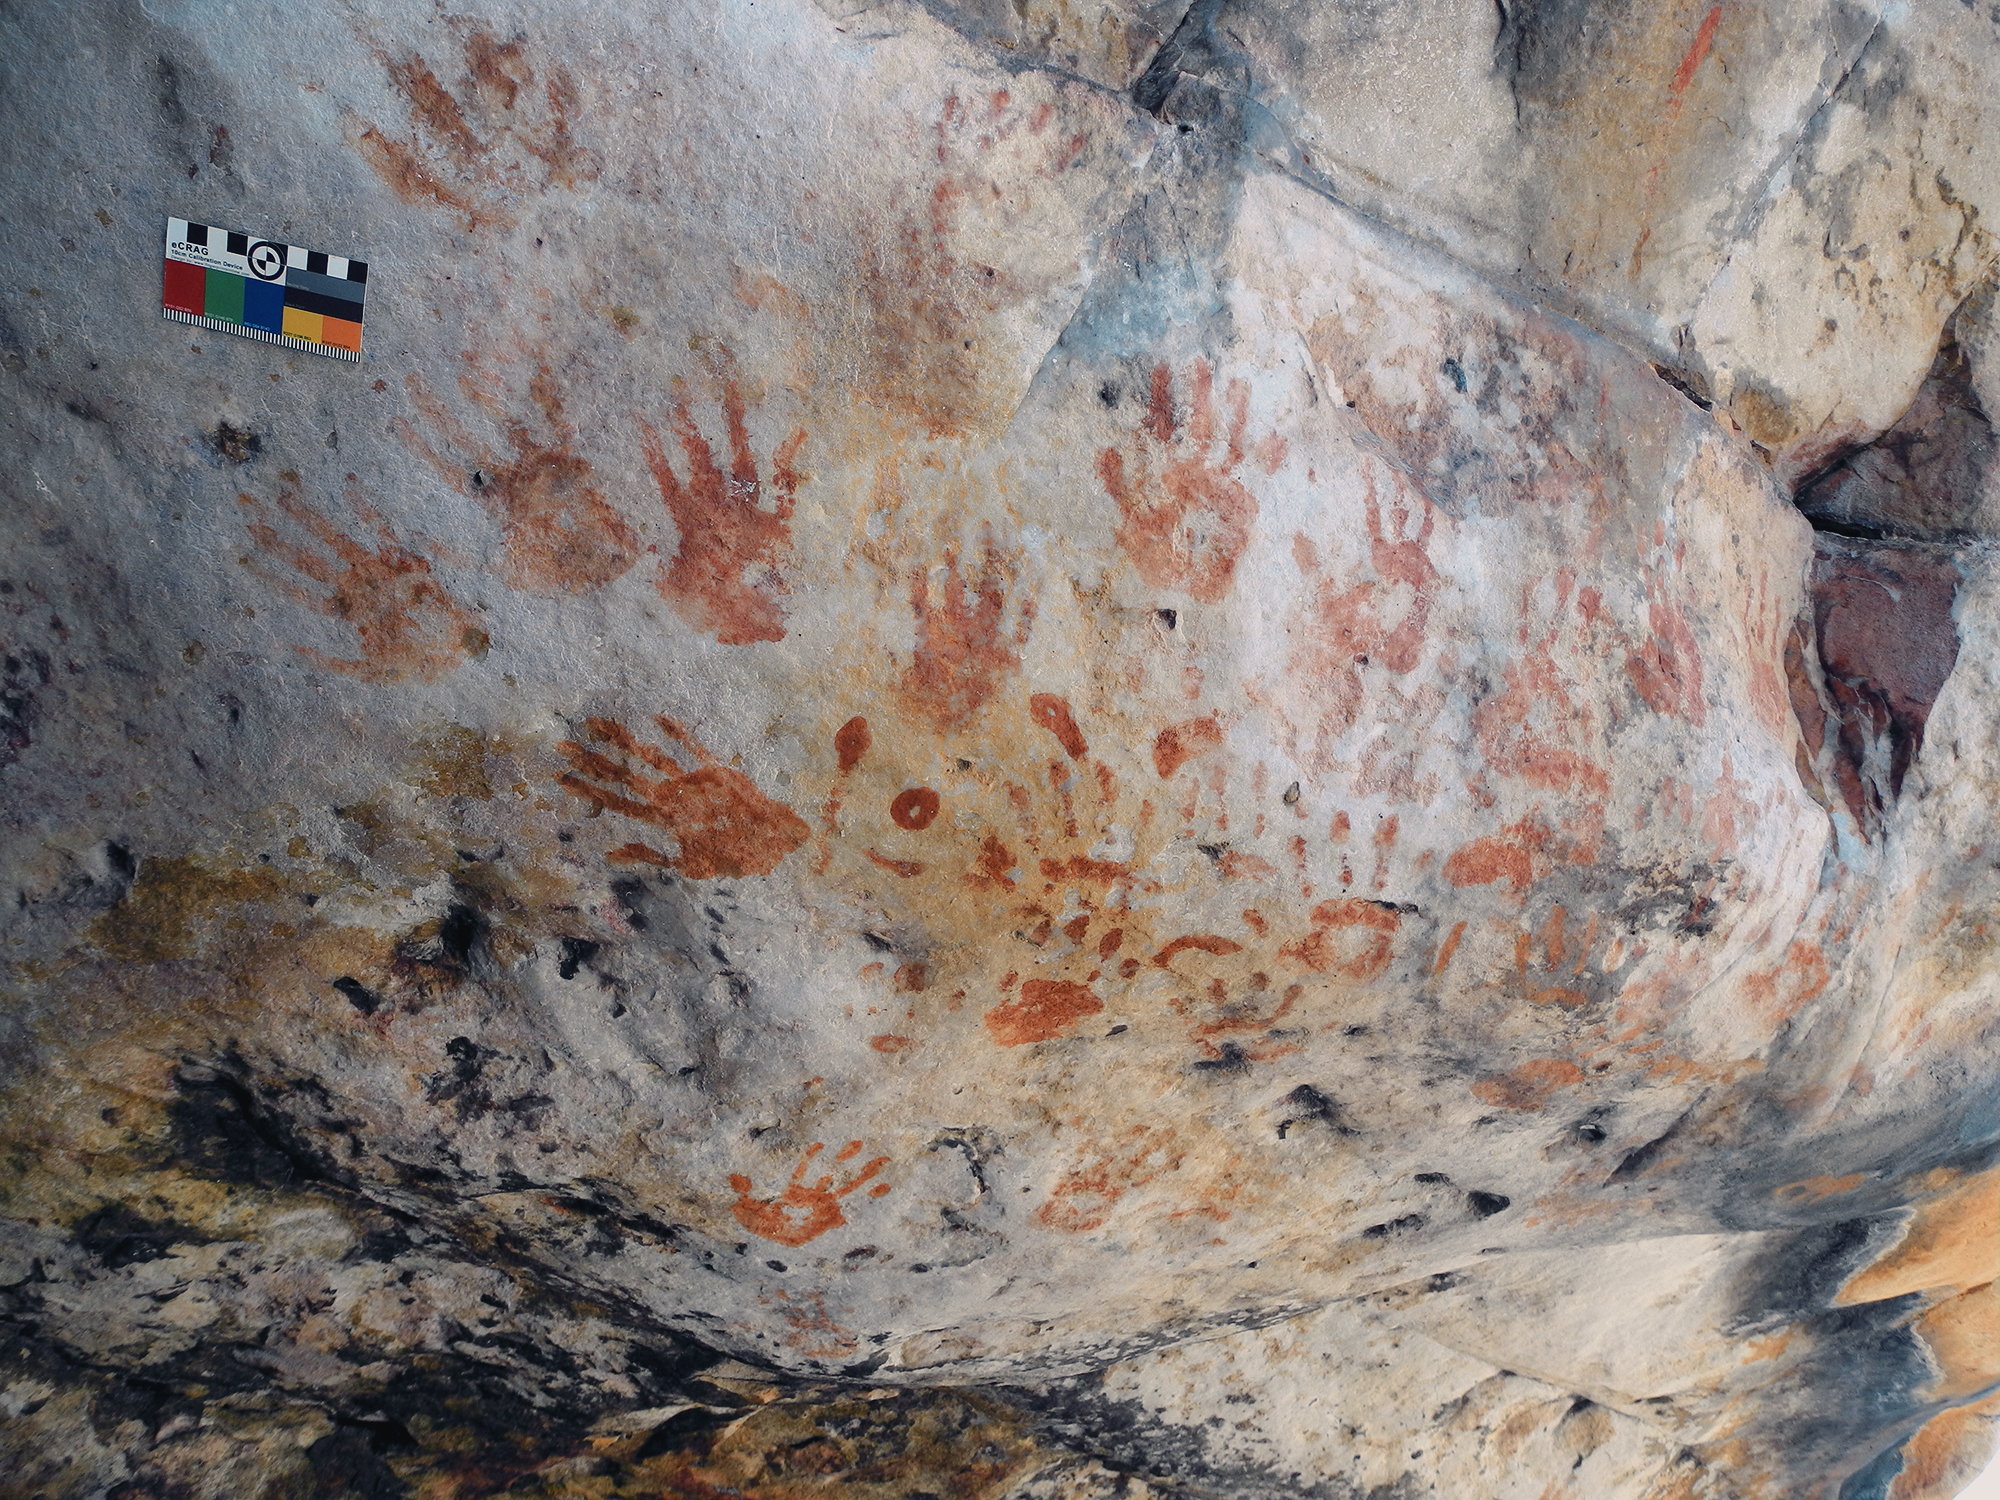 Rock Art Plain handprints Groenfontein Swartruggens Archaeology South Africa